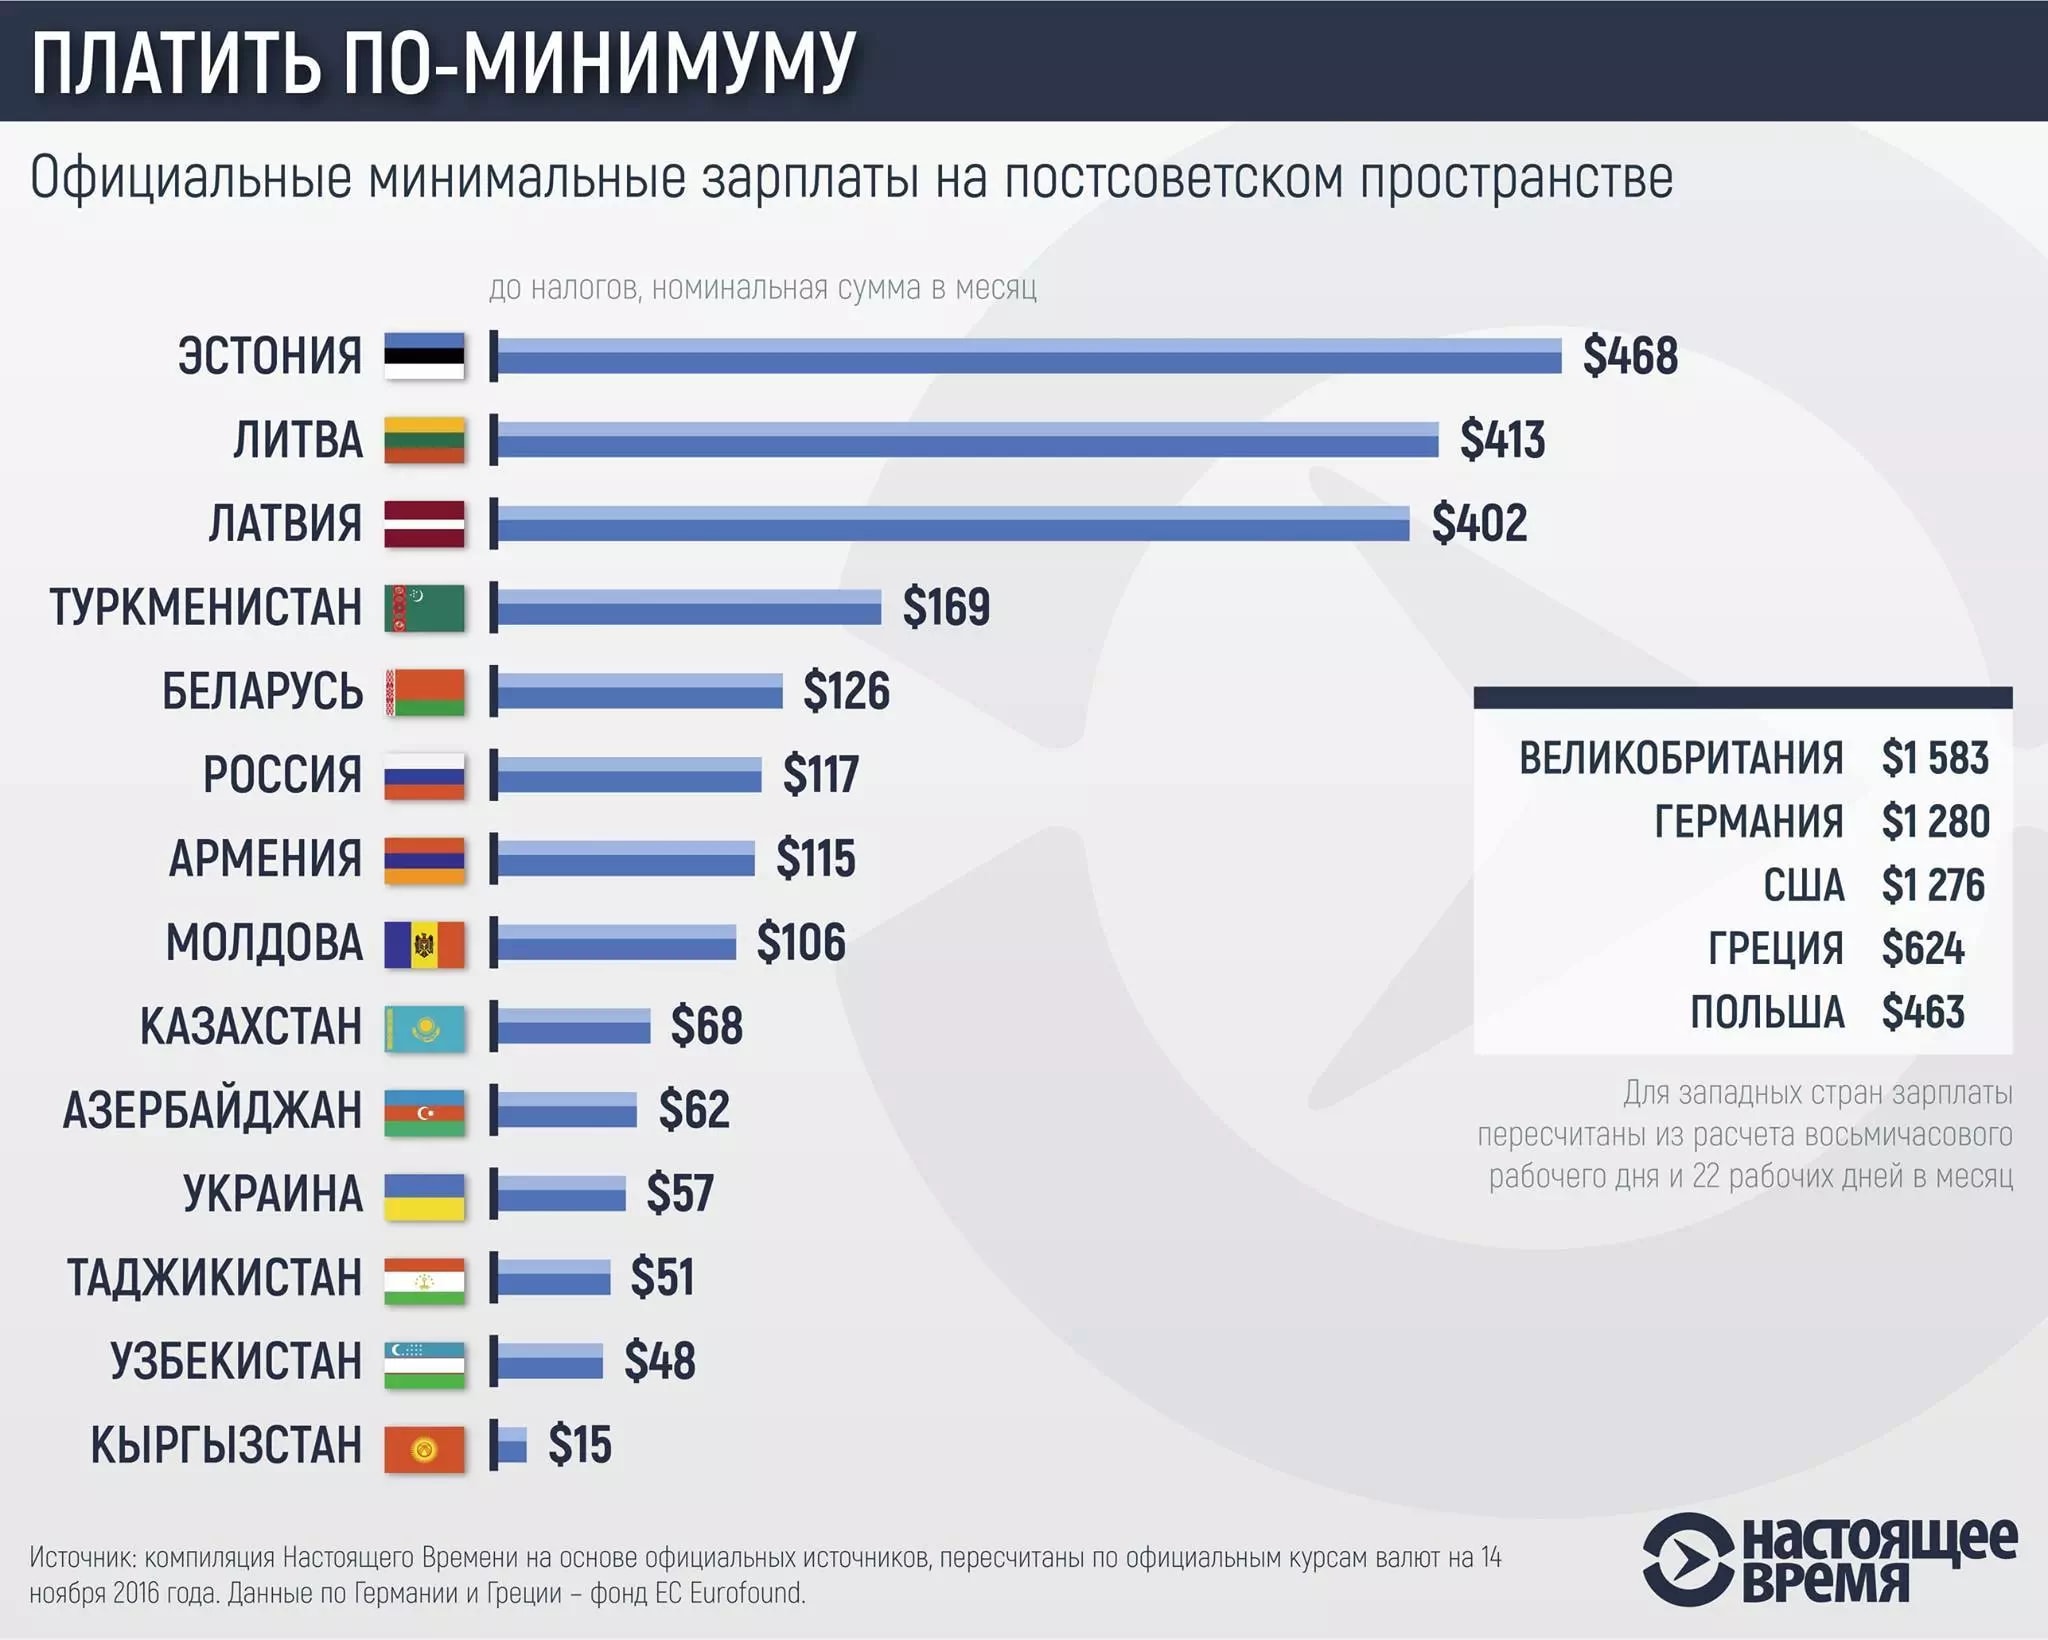 В Кыргызстане за месяц работы можно получить 15 долларов (инфографика) - «Финансы»